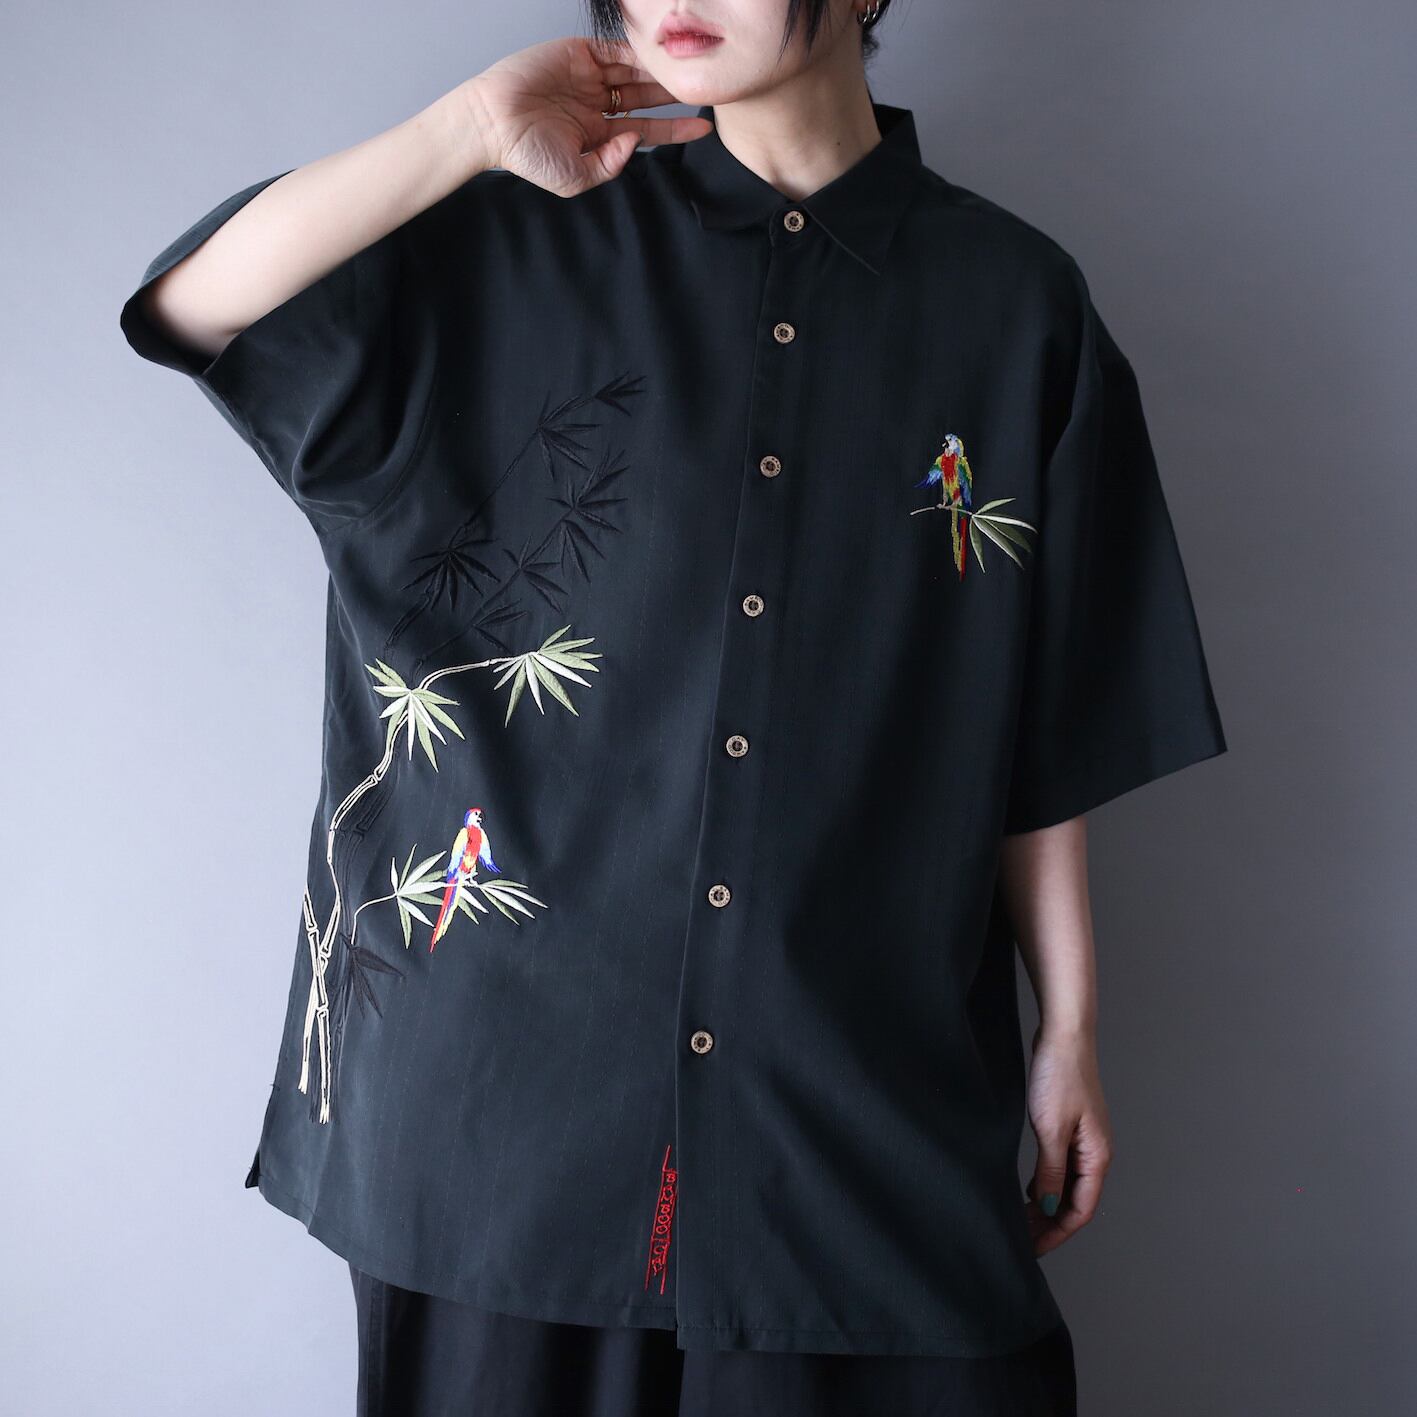 "刺繍×鳥" front and back design over silhouette h/s shirt